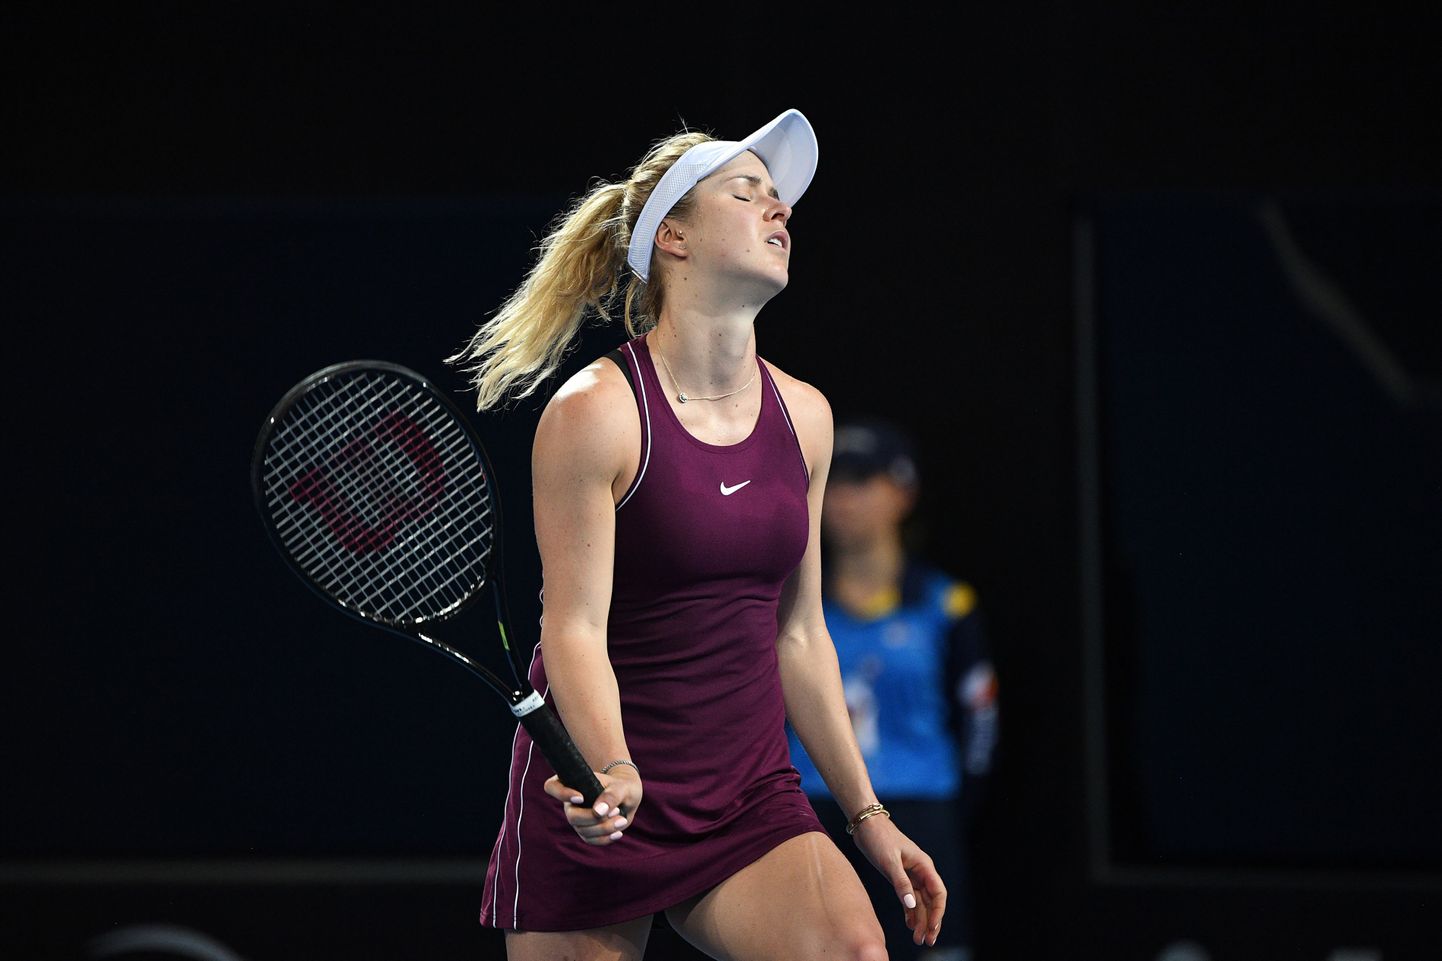 Brisbane'i tenniseturniiri valitsev tšempion Elina Svitolina piirdus hooaja avavõistlusel tänavu vaid ühe mänguga.